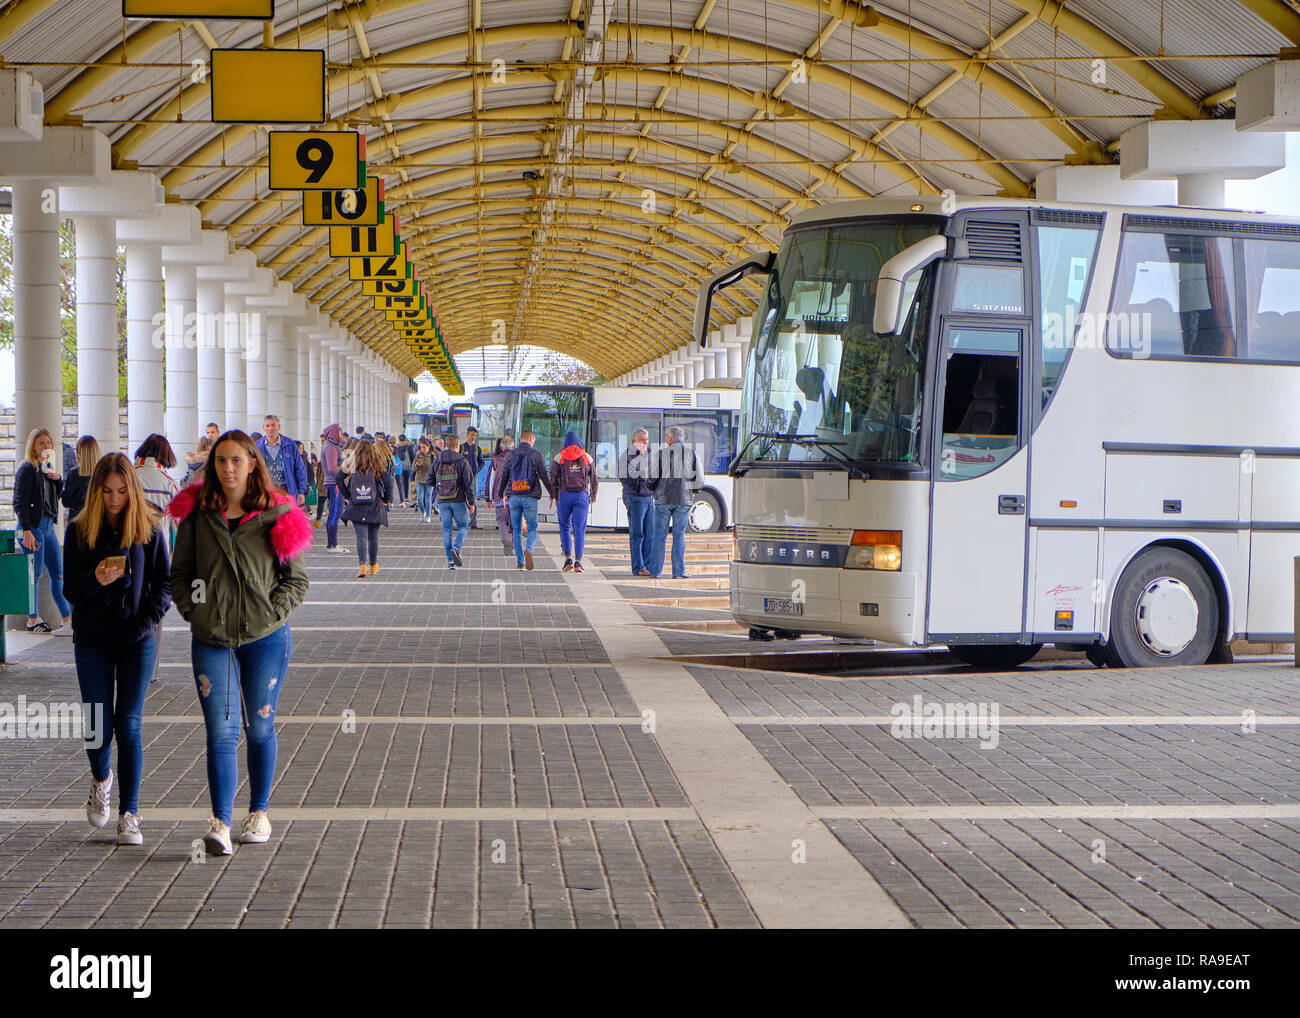 Le terminal de bus longue distance 9 plate-forme et, avec l'autobus en attente, et les passagers arrivant de la ligne principale, les chiffres et l'architecture du dôme voûté Banque D'Images